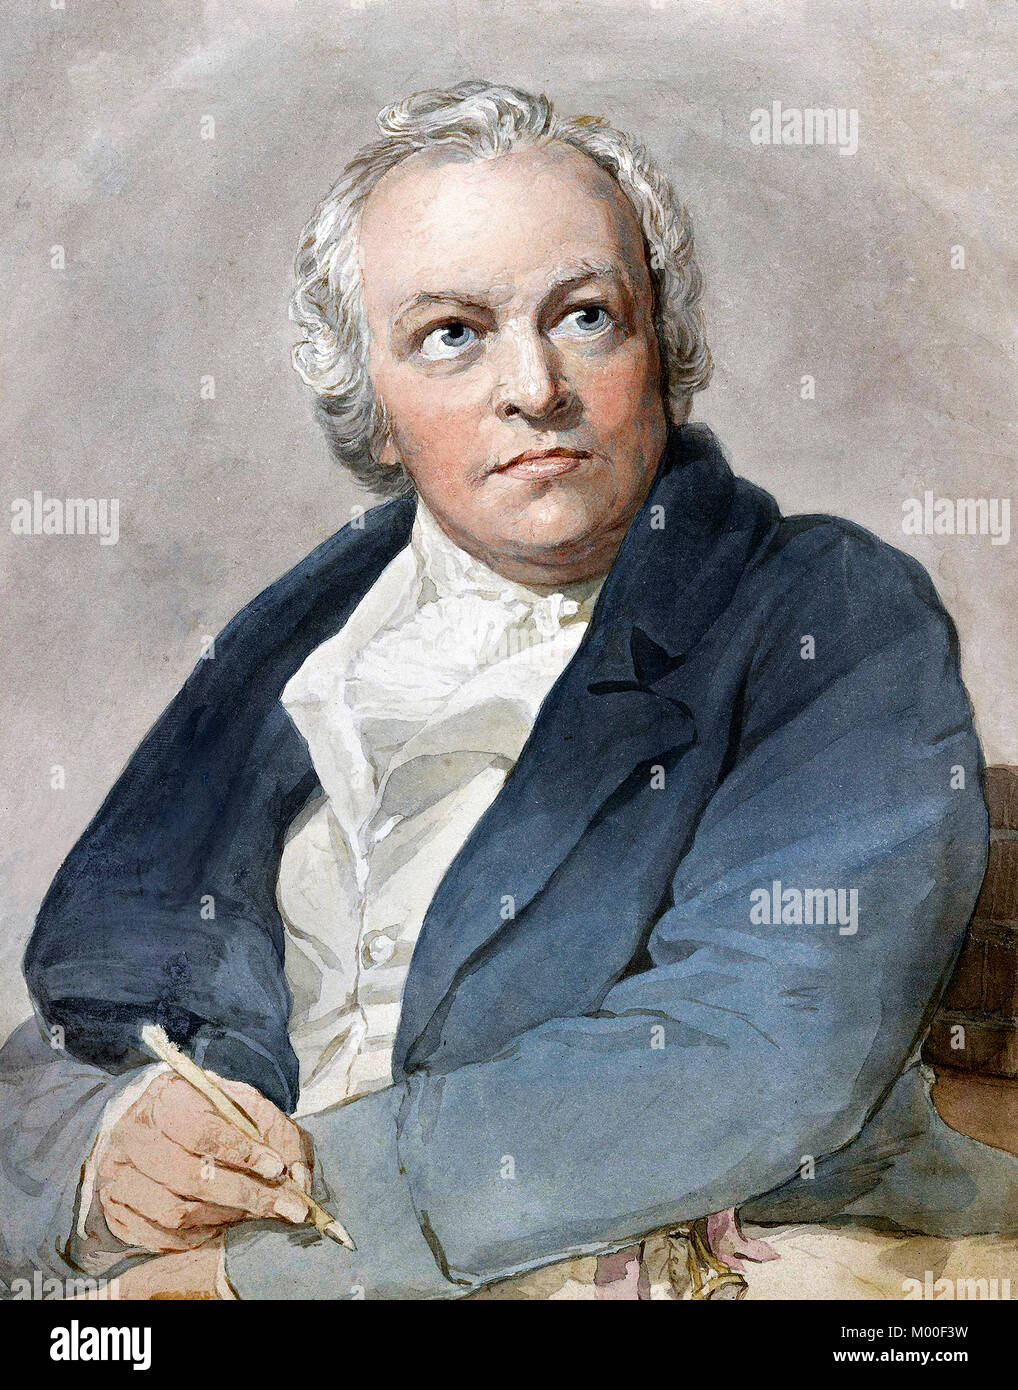 William Blake (1757-1827) le poète anglais, peintre, graveur et. Copie d'après Thomas Phillips, aquarelle sur papier, 1807. Banque D'Images